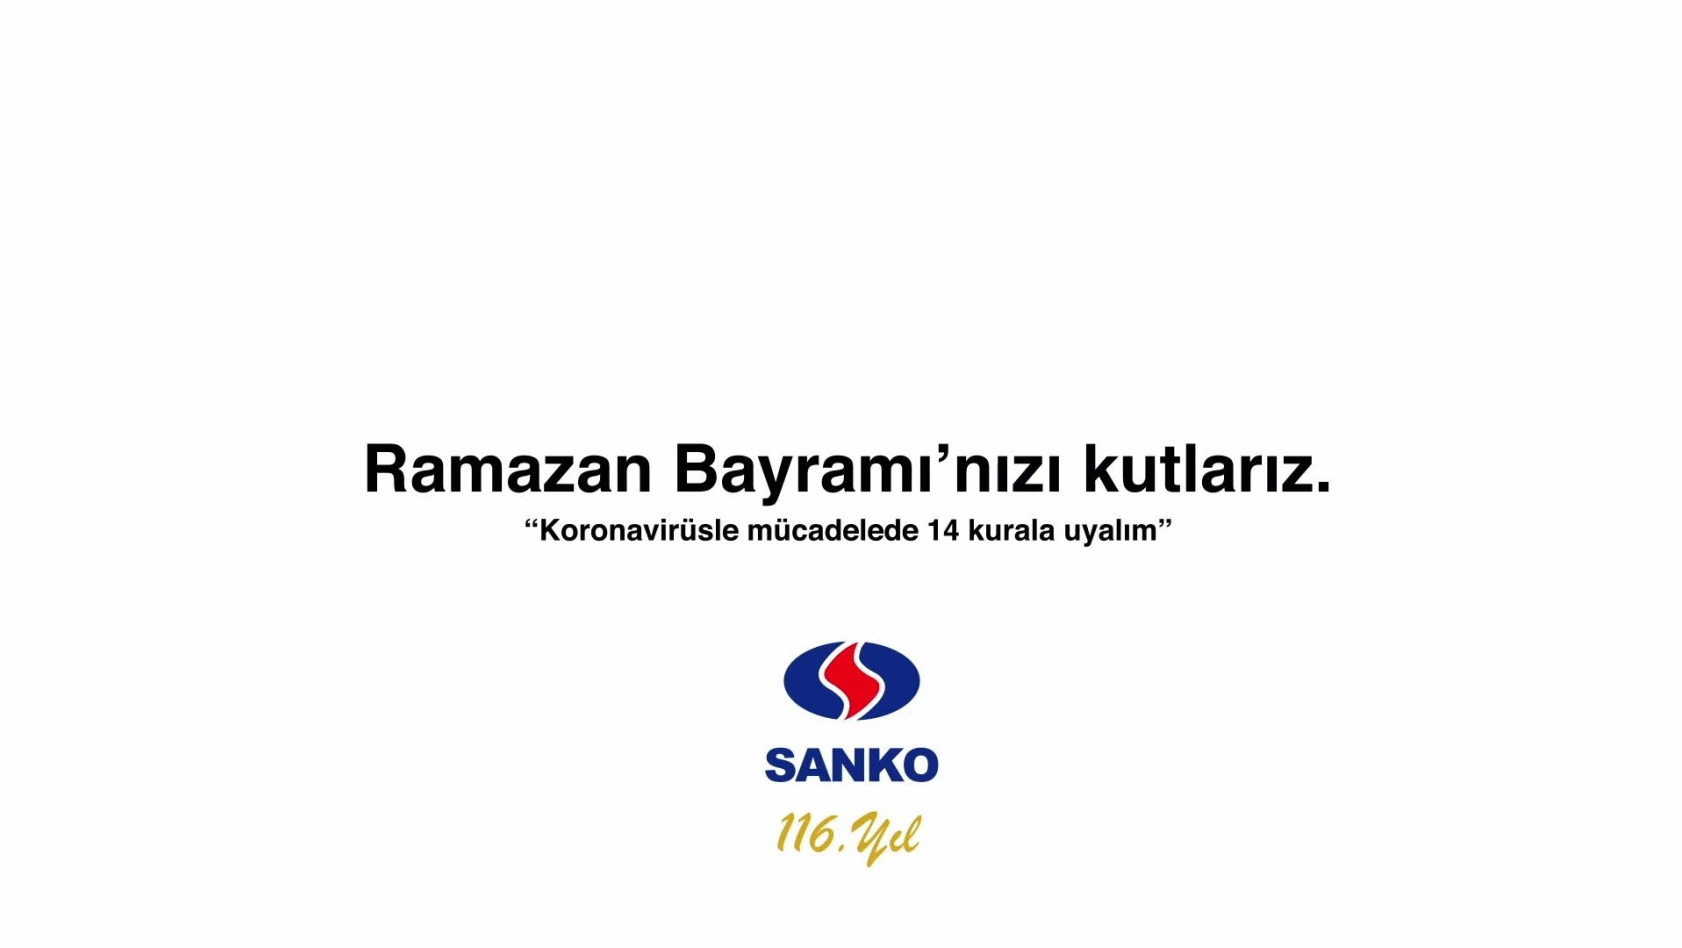 SANKO Holding Ramazan Bayramı mesajı